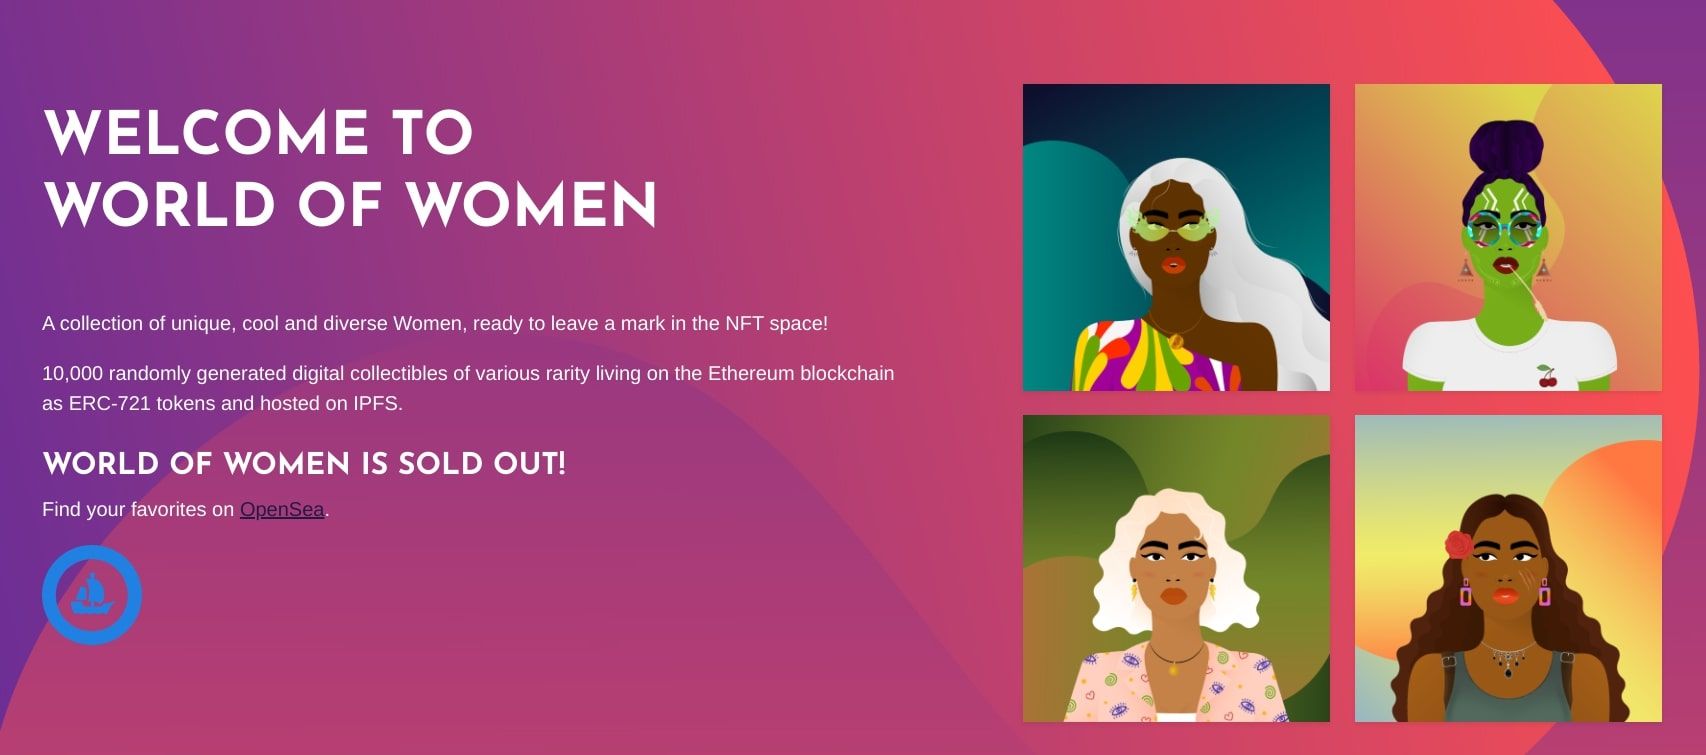 world of women website screenshot